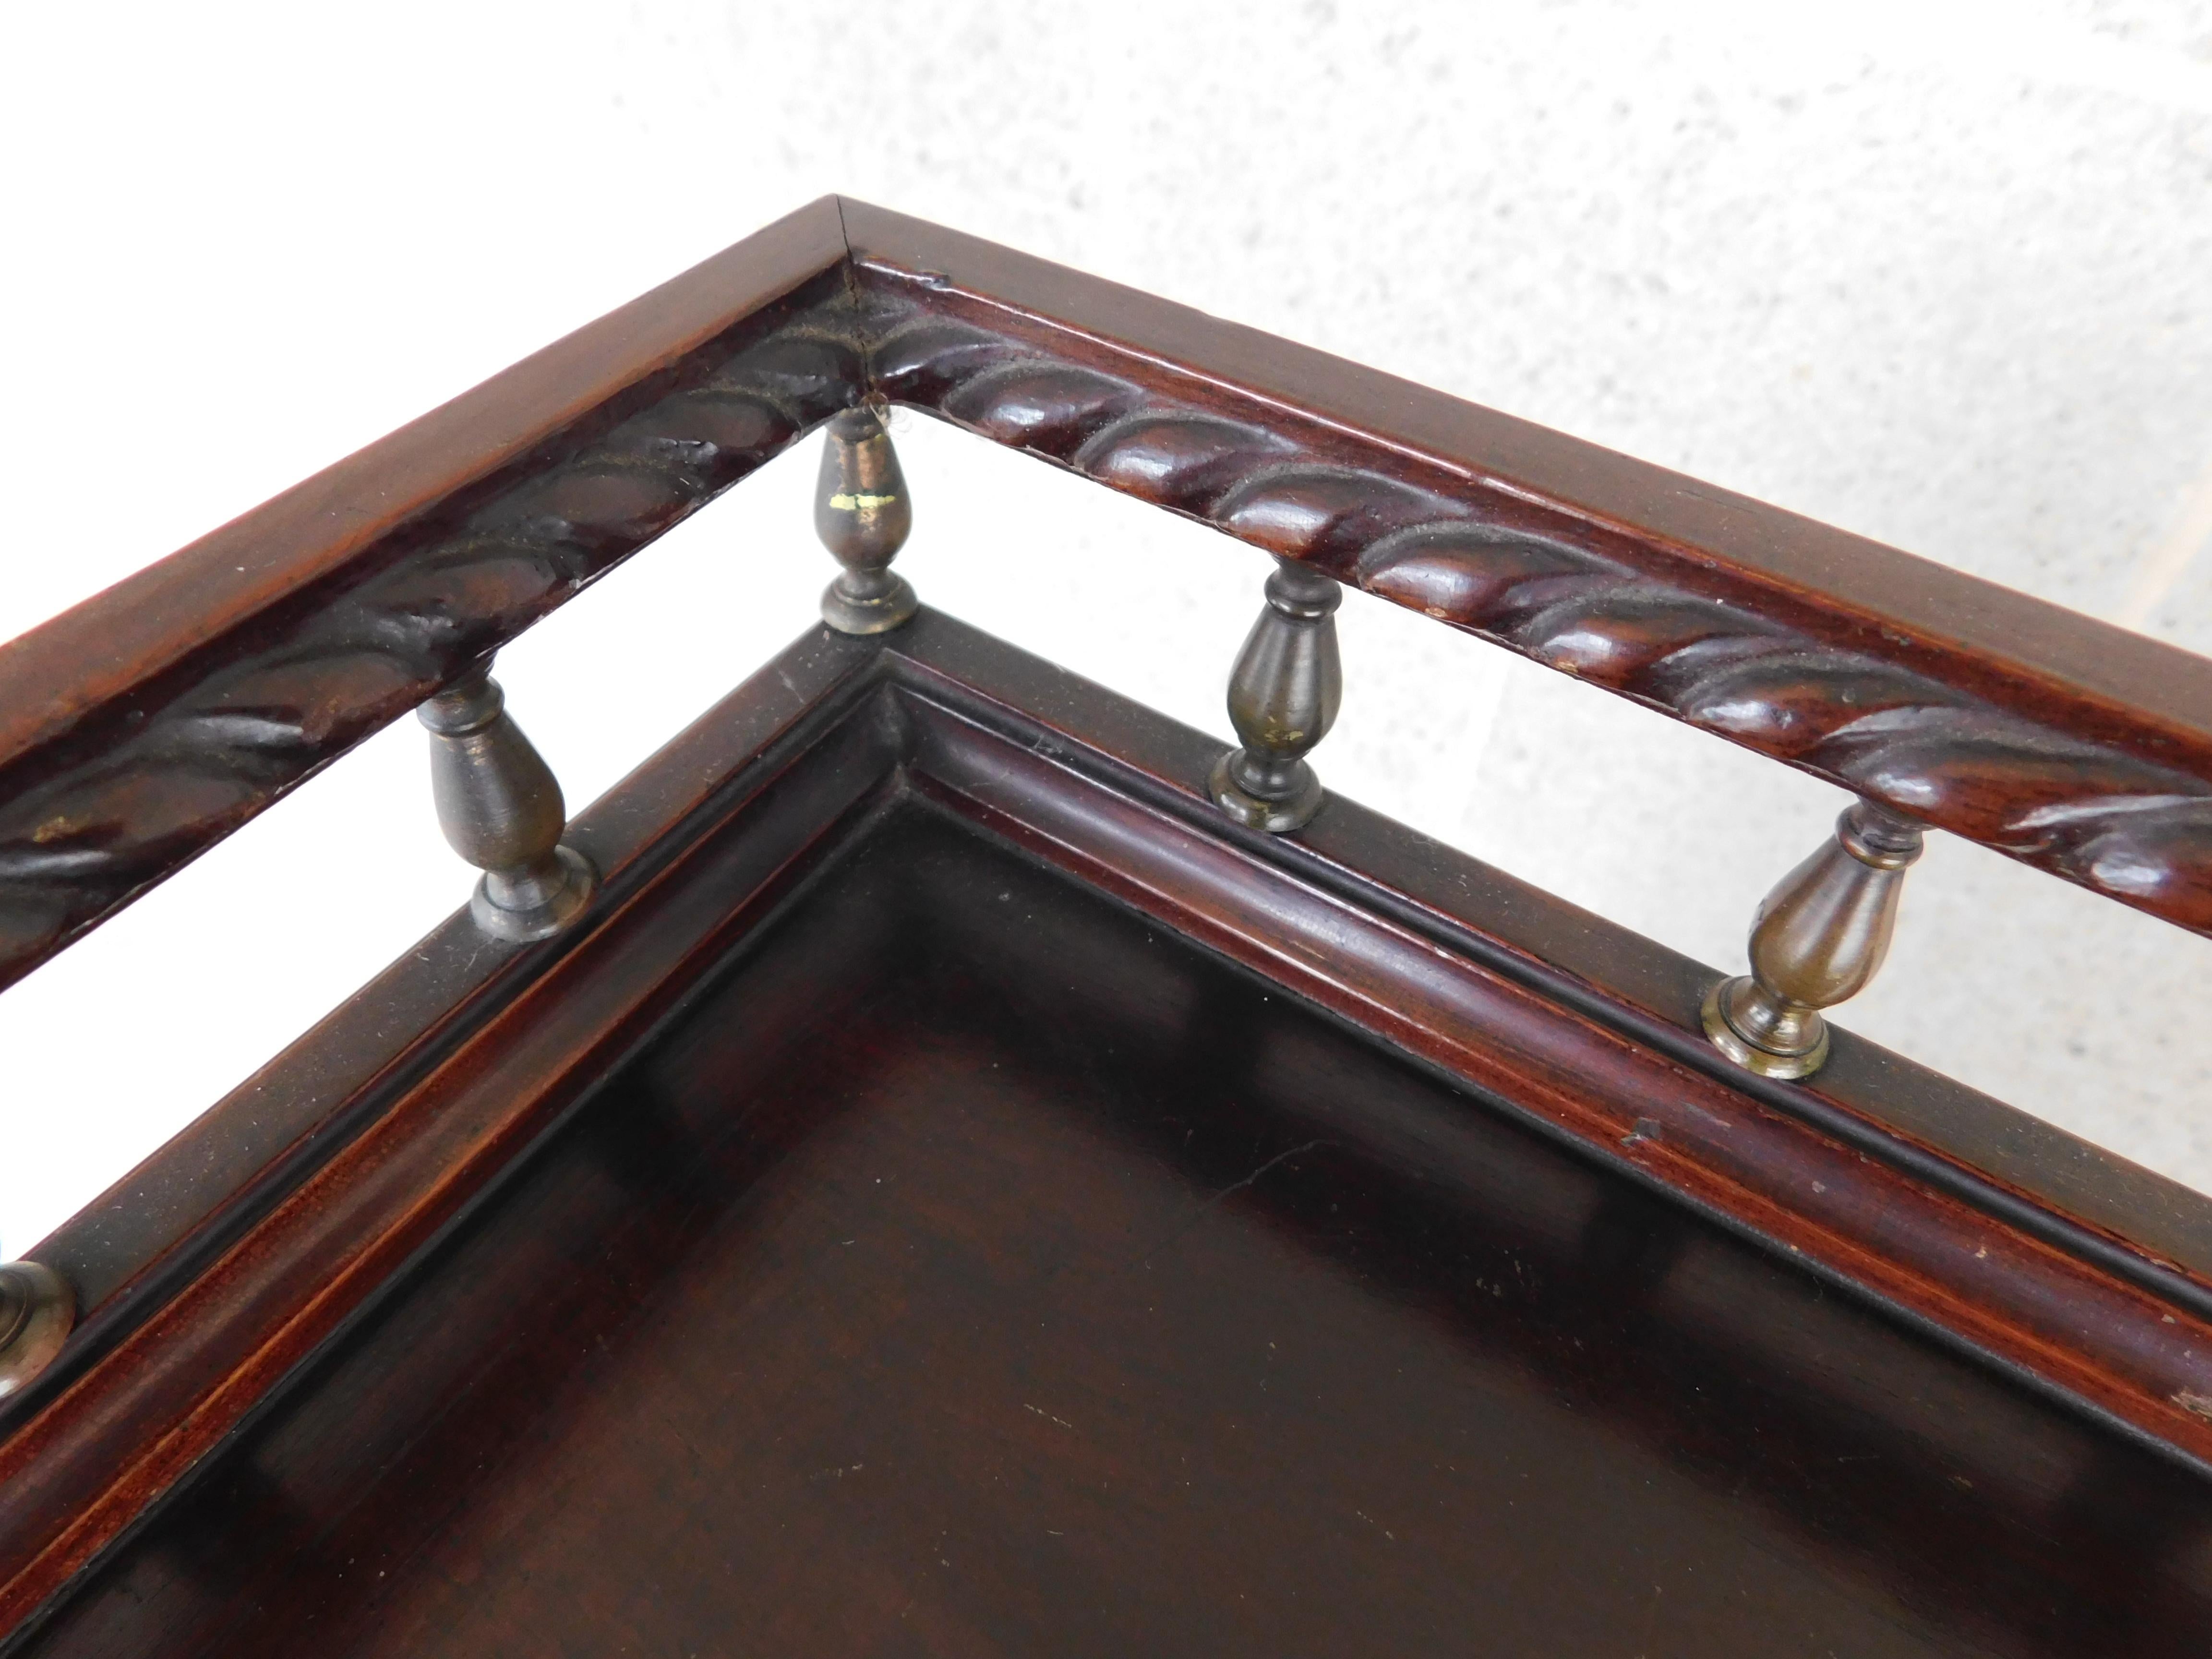 Sypher & Co. Chippendale-Schreibtisch mit schräger Front aus dem 19. Jahrhundert mit ausgezeichneter Originallackierung aus einem Privatbesitz in Princeton NJ 
Auf der schrägen Vorderseite befinden sich kunstvolle Muschelschnitzereien, die typisch